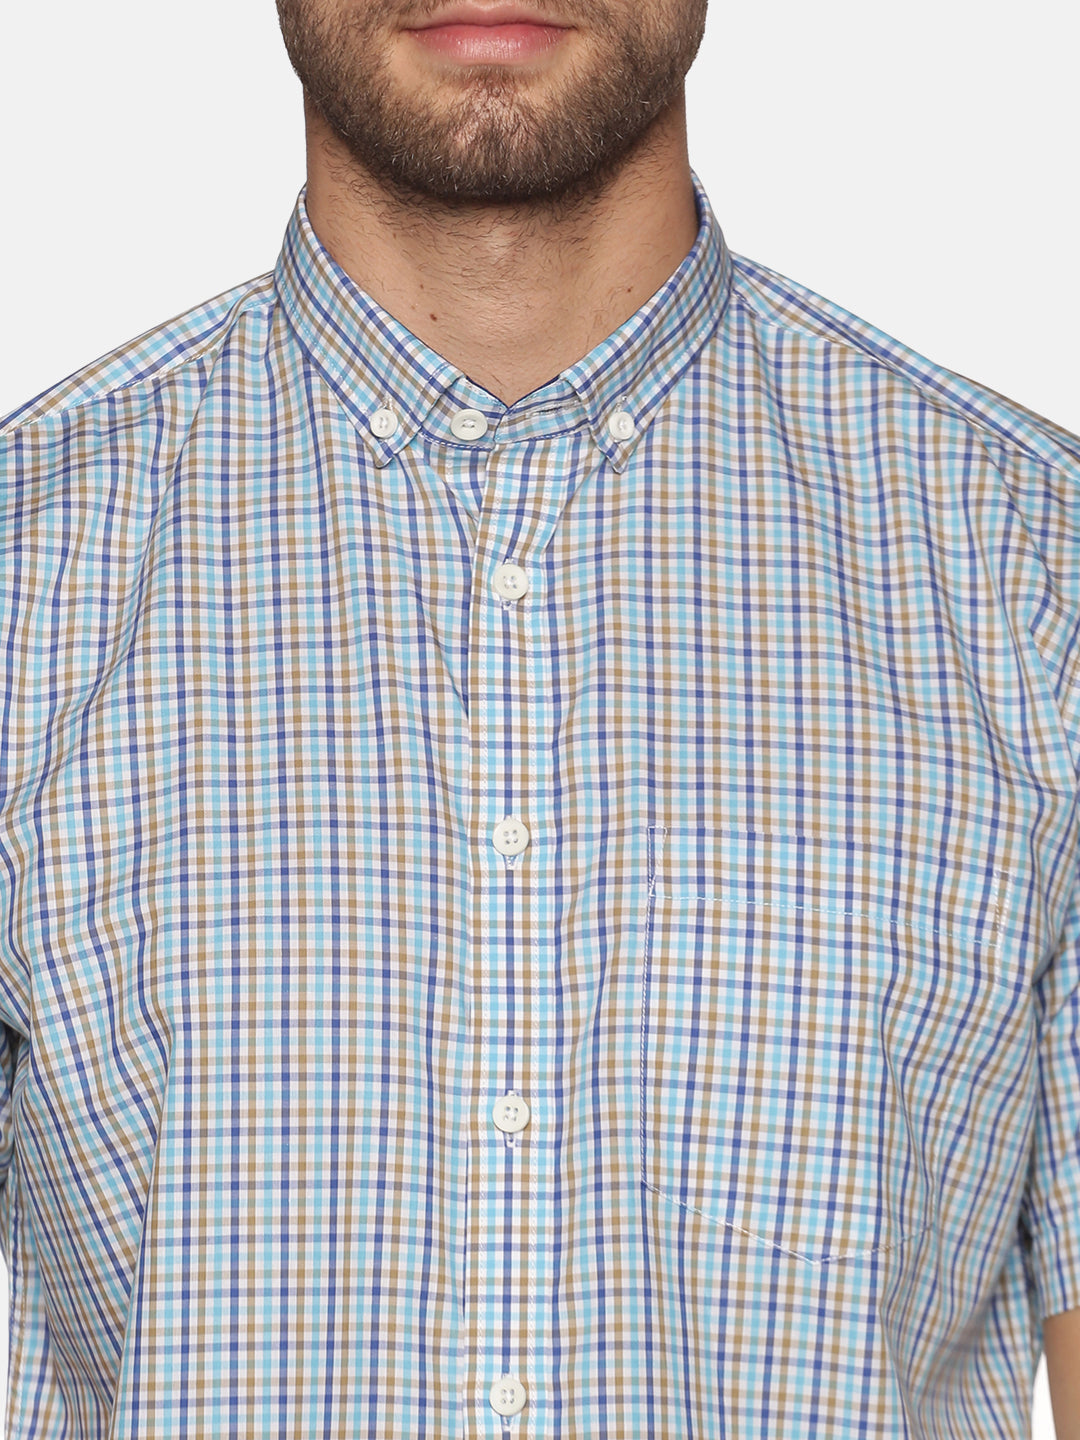 Don Vino Men's Light Blue Checkered Half Sleeve Shirt